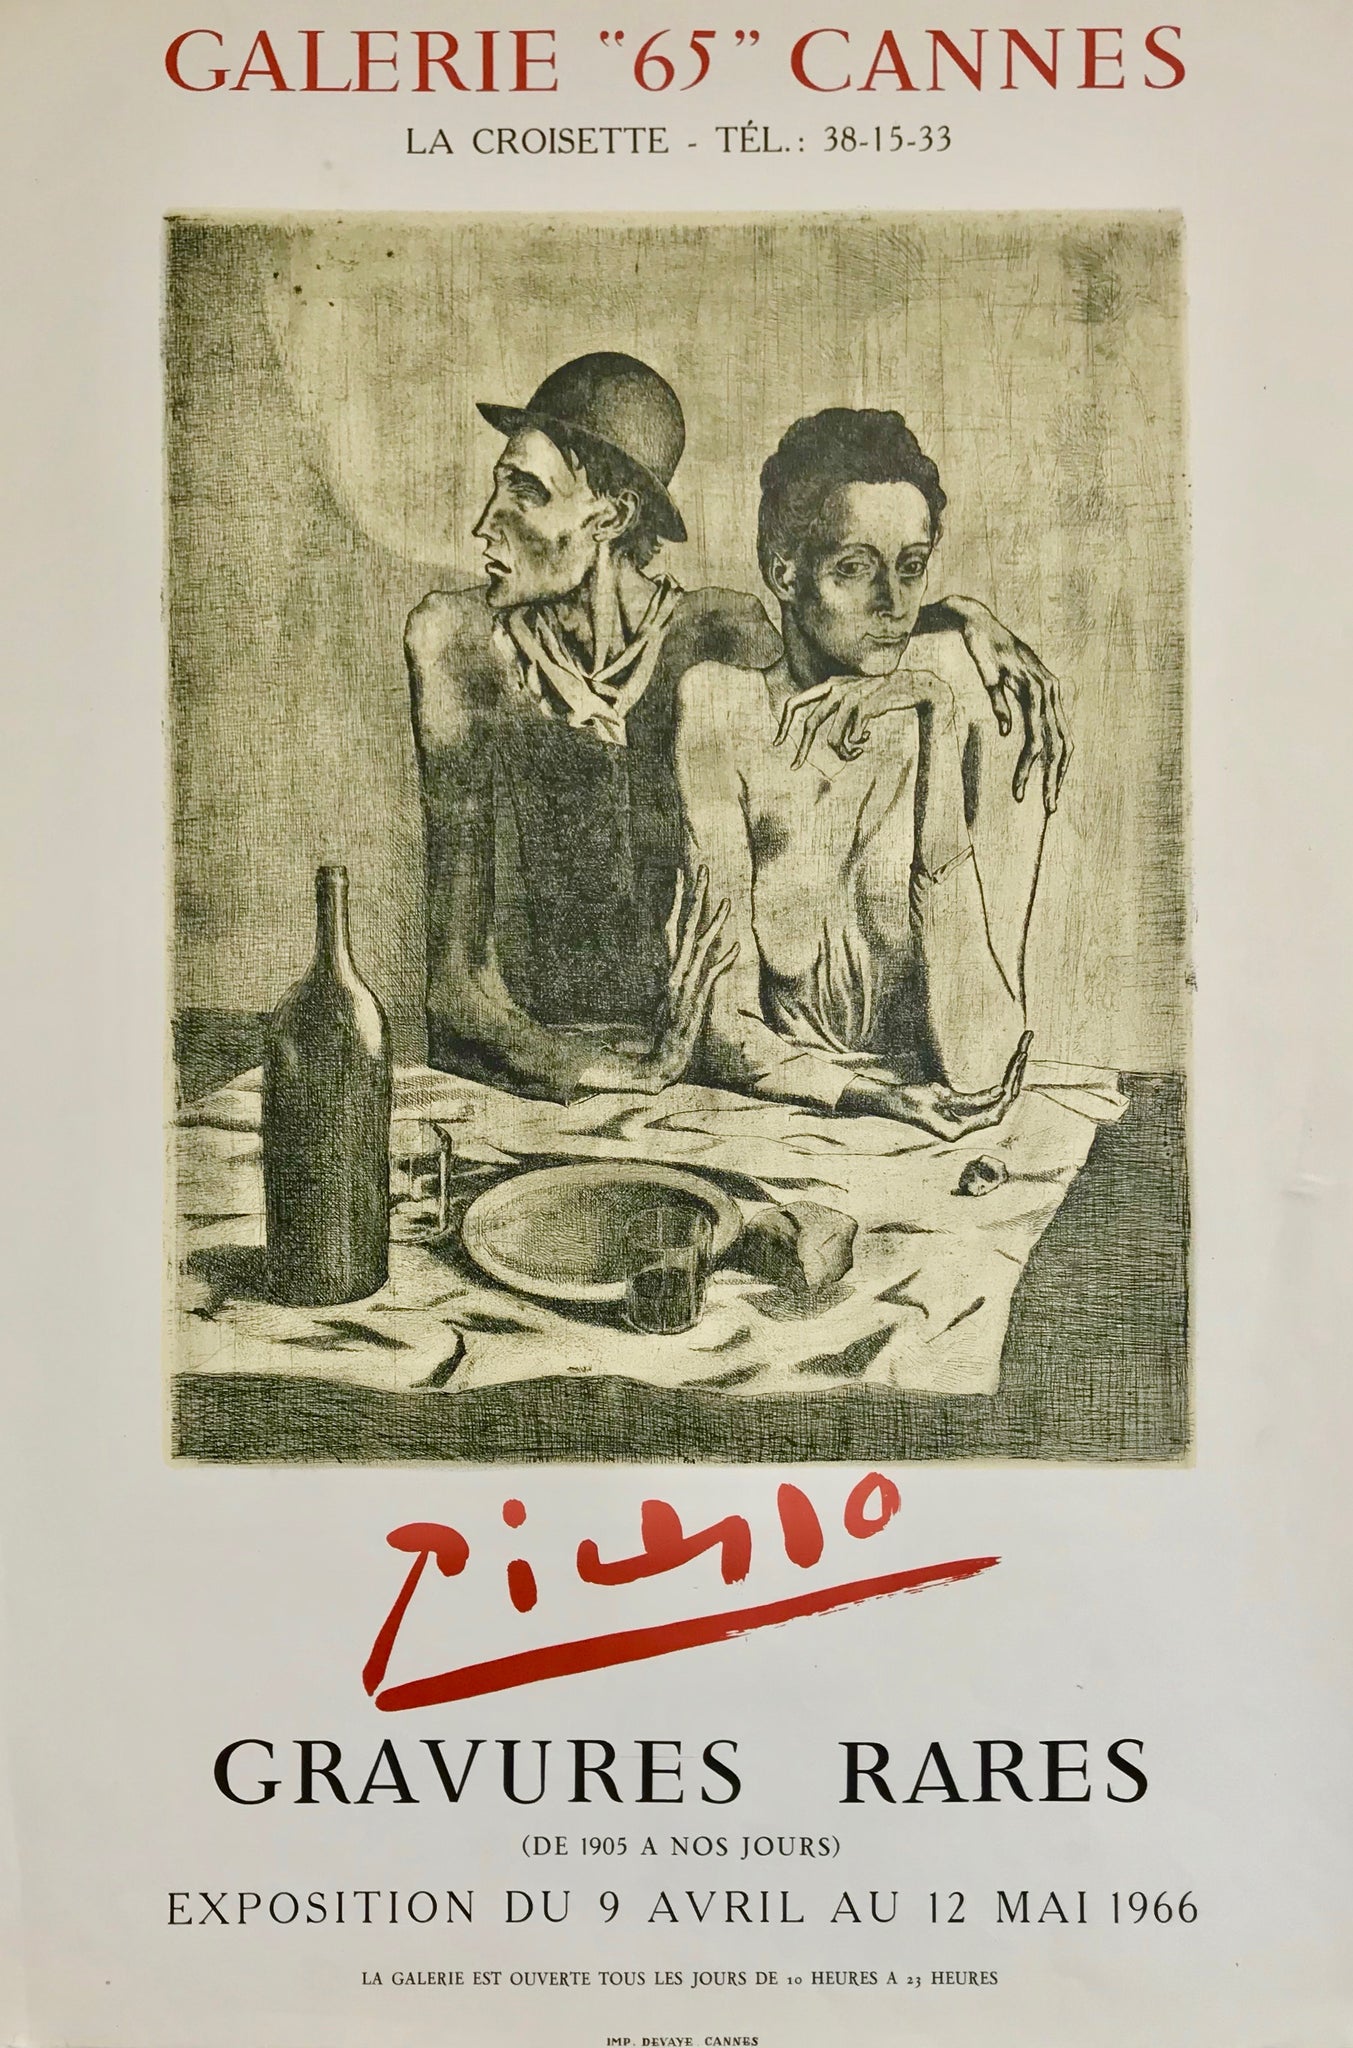  Affiche lithographique originale réalisée pour l'exposition "Gravures rares (1905 à nos jours)"  de Pablo Picasso à la galerie 65, Cannes, en mai 1966.